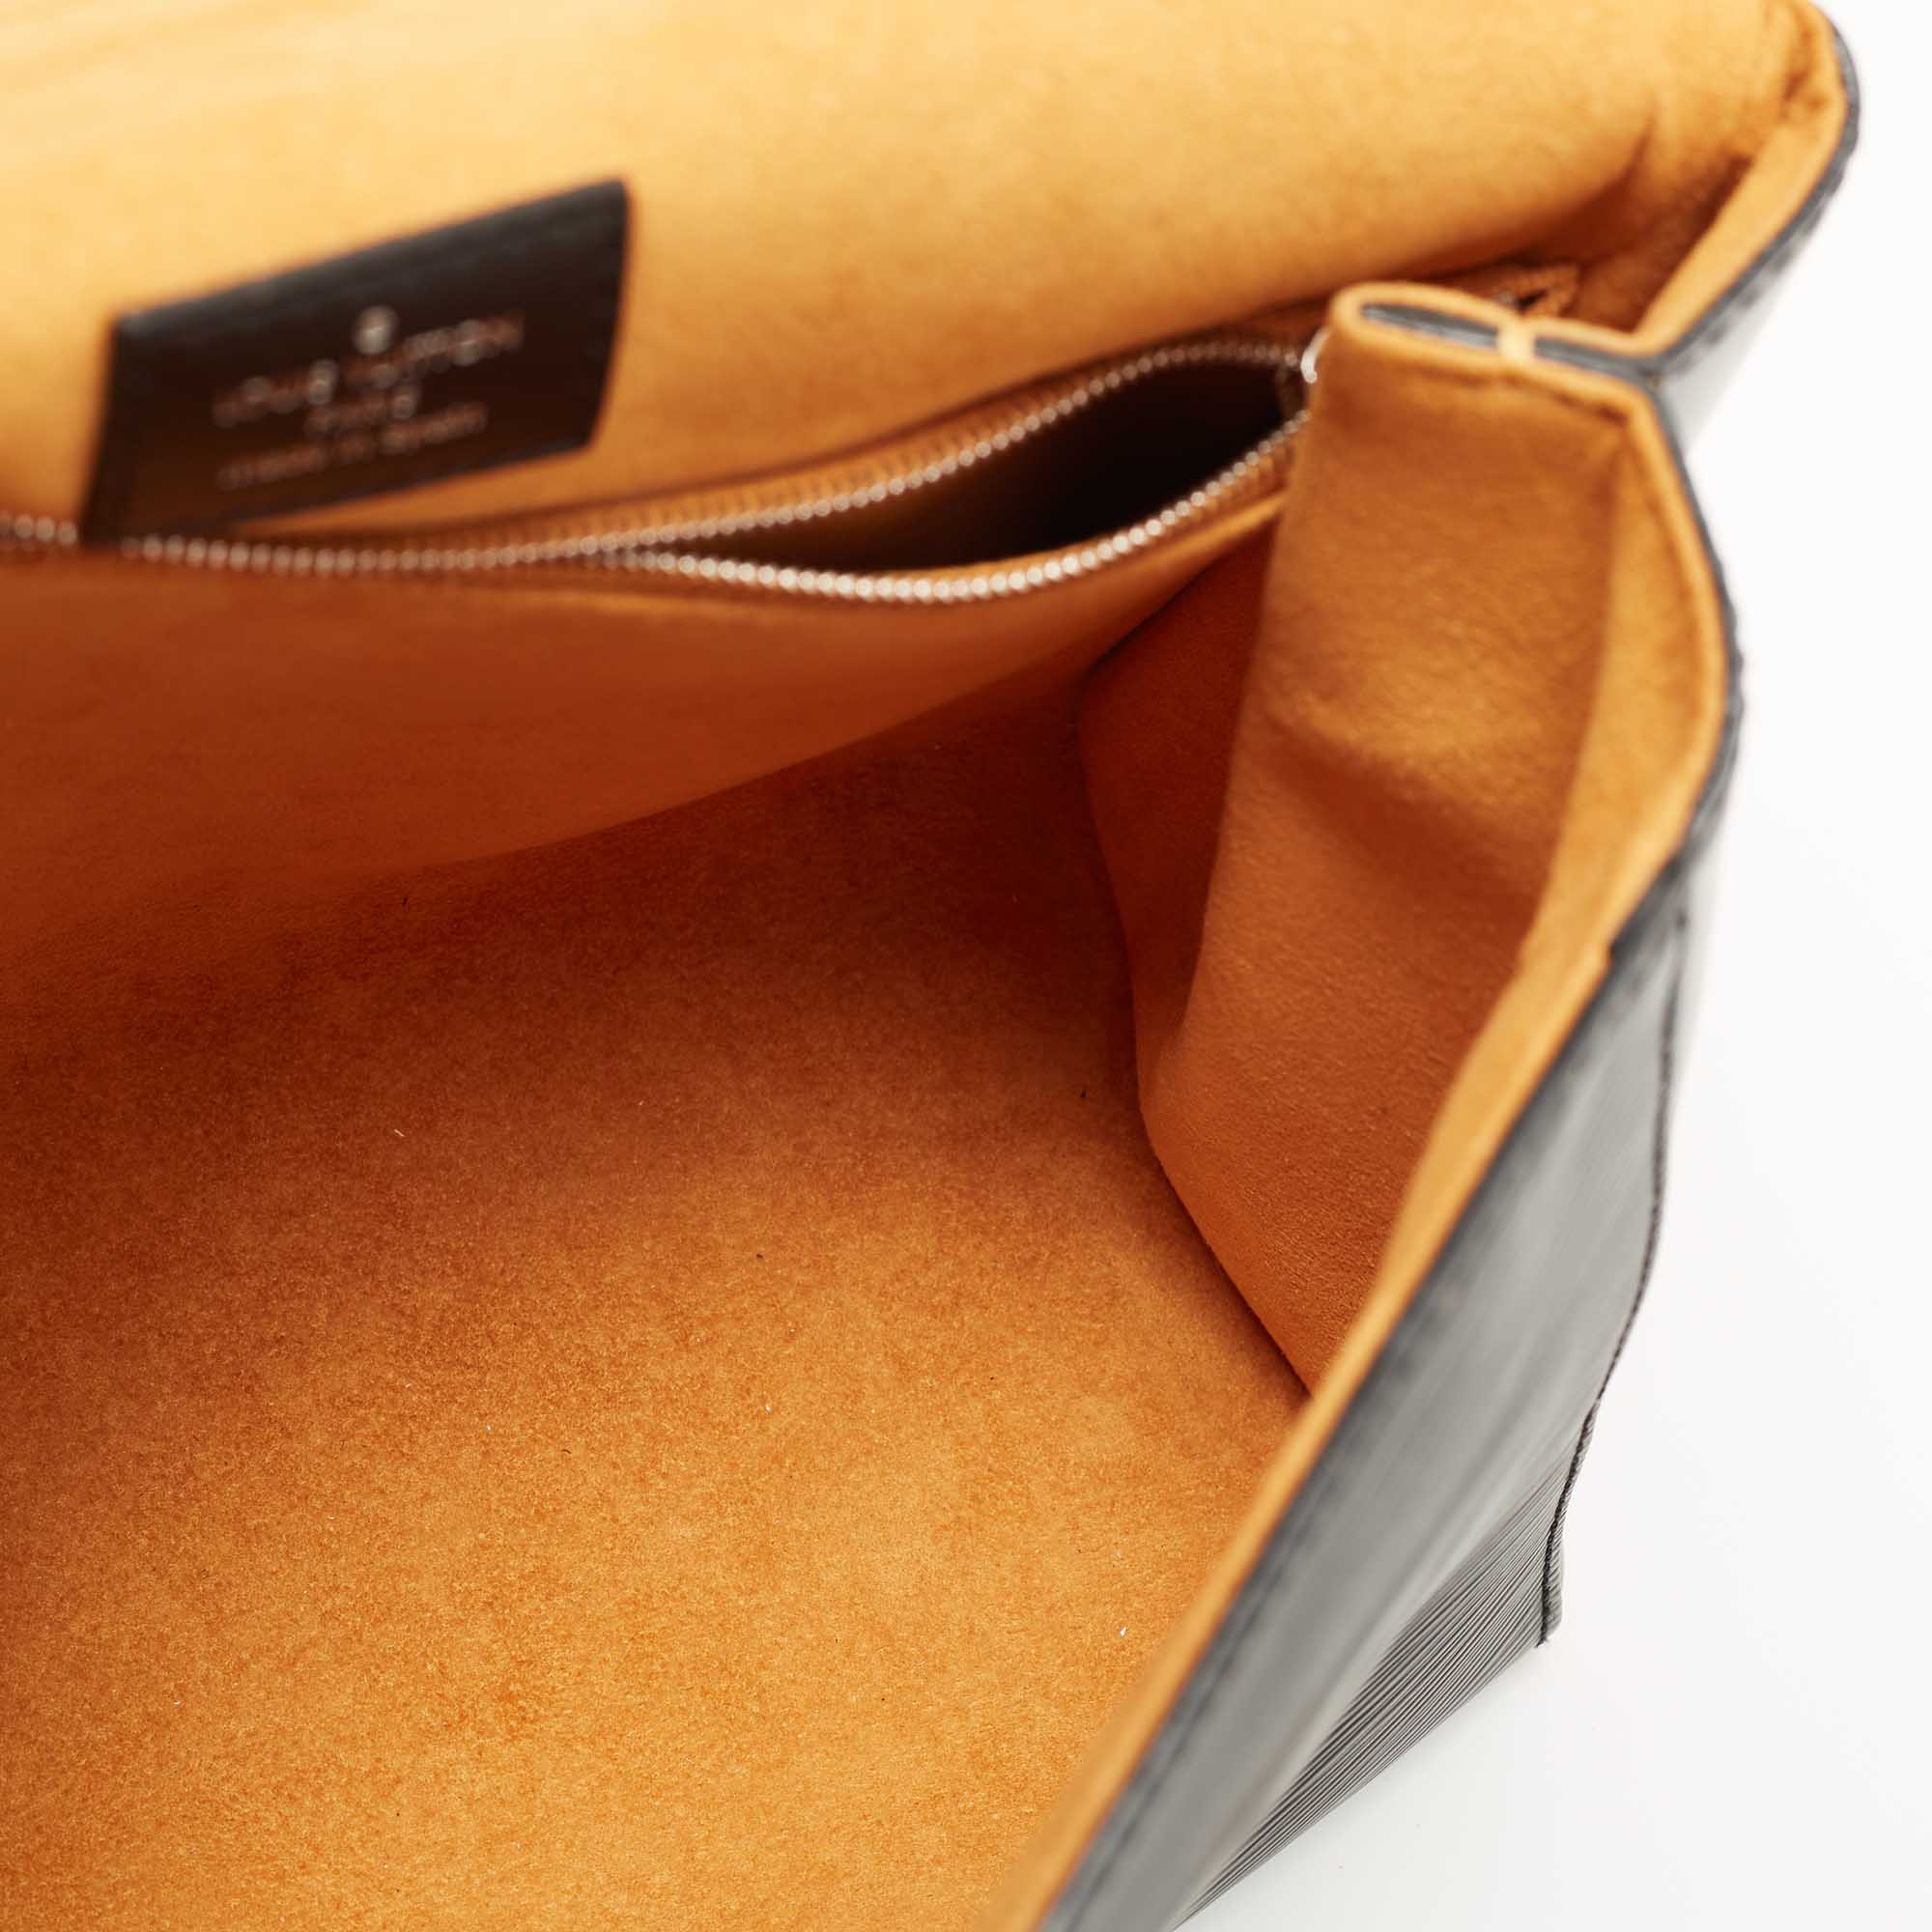 Louis Vuitton Grenelle Pochette Bag Epi Leather Black 1135382